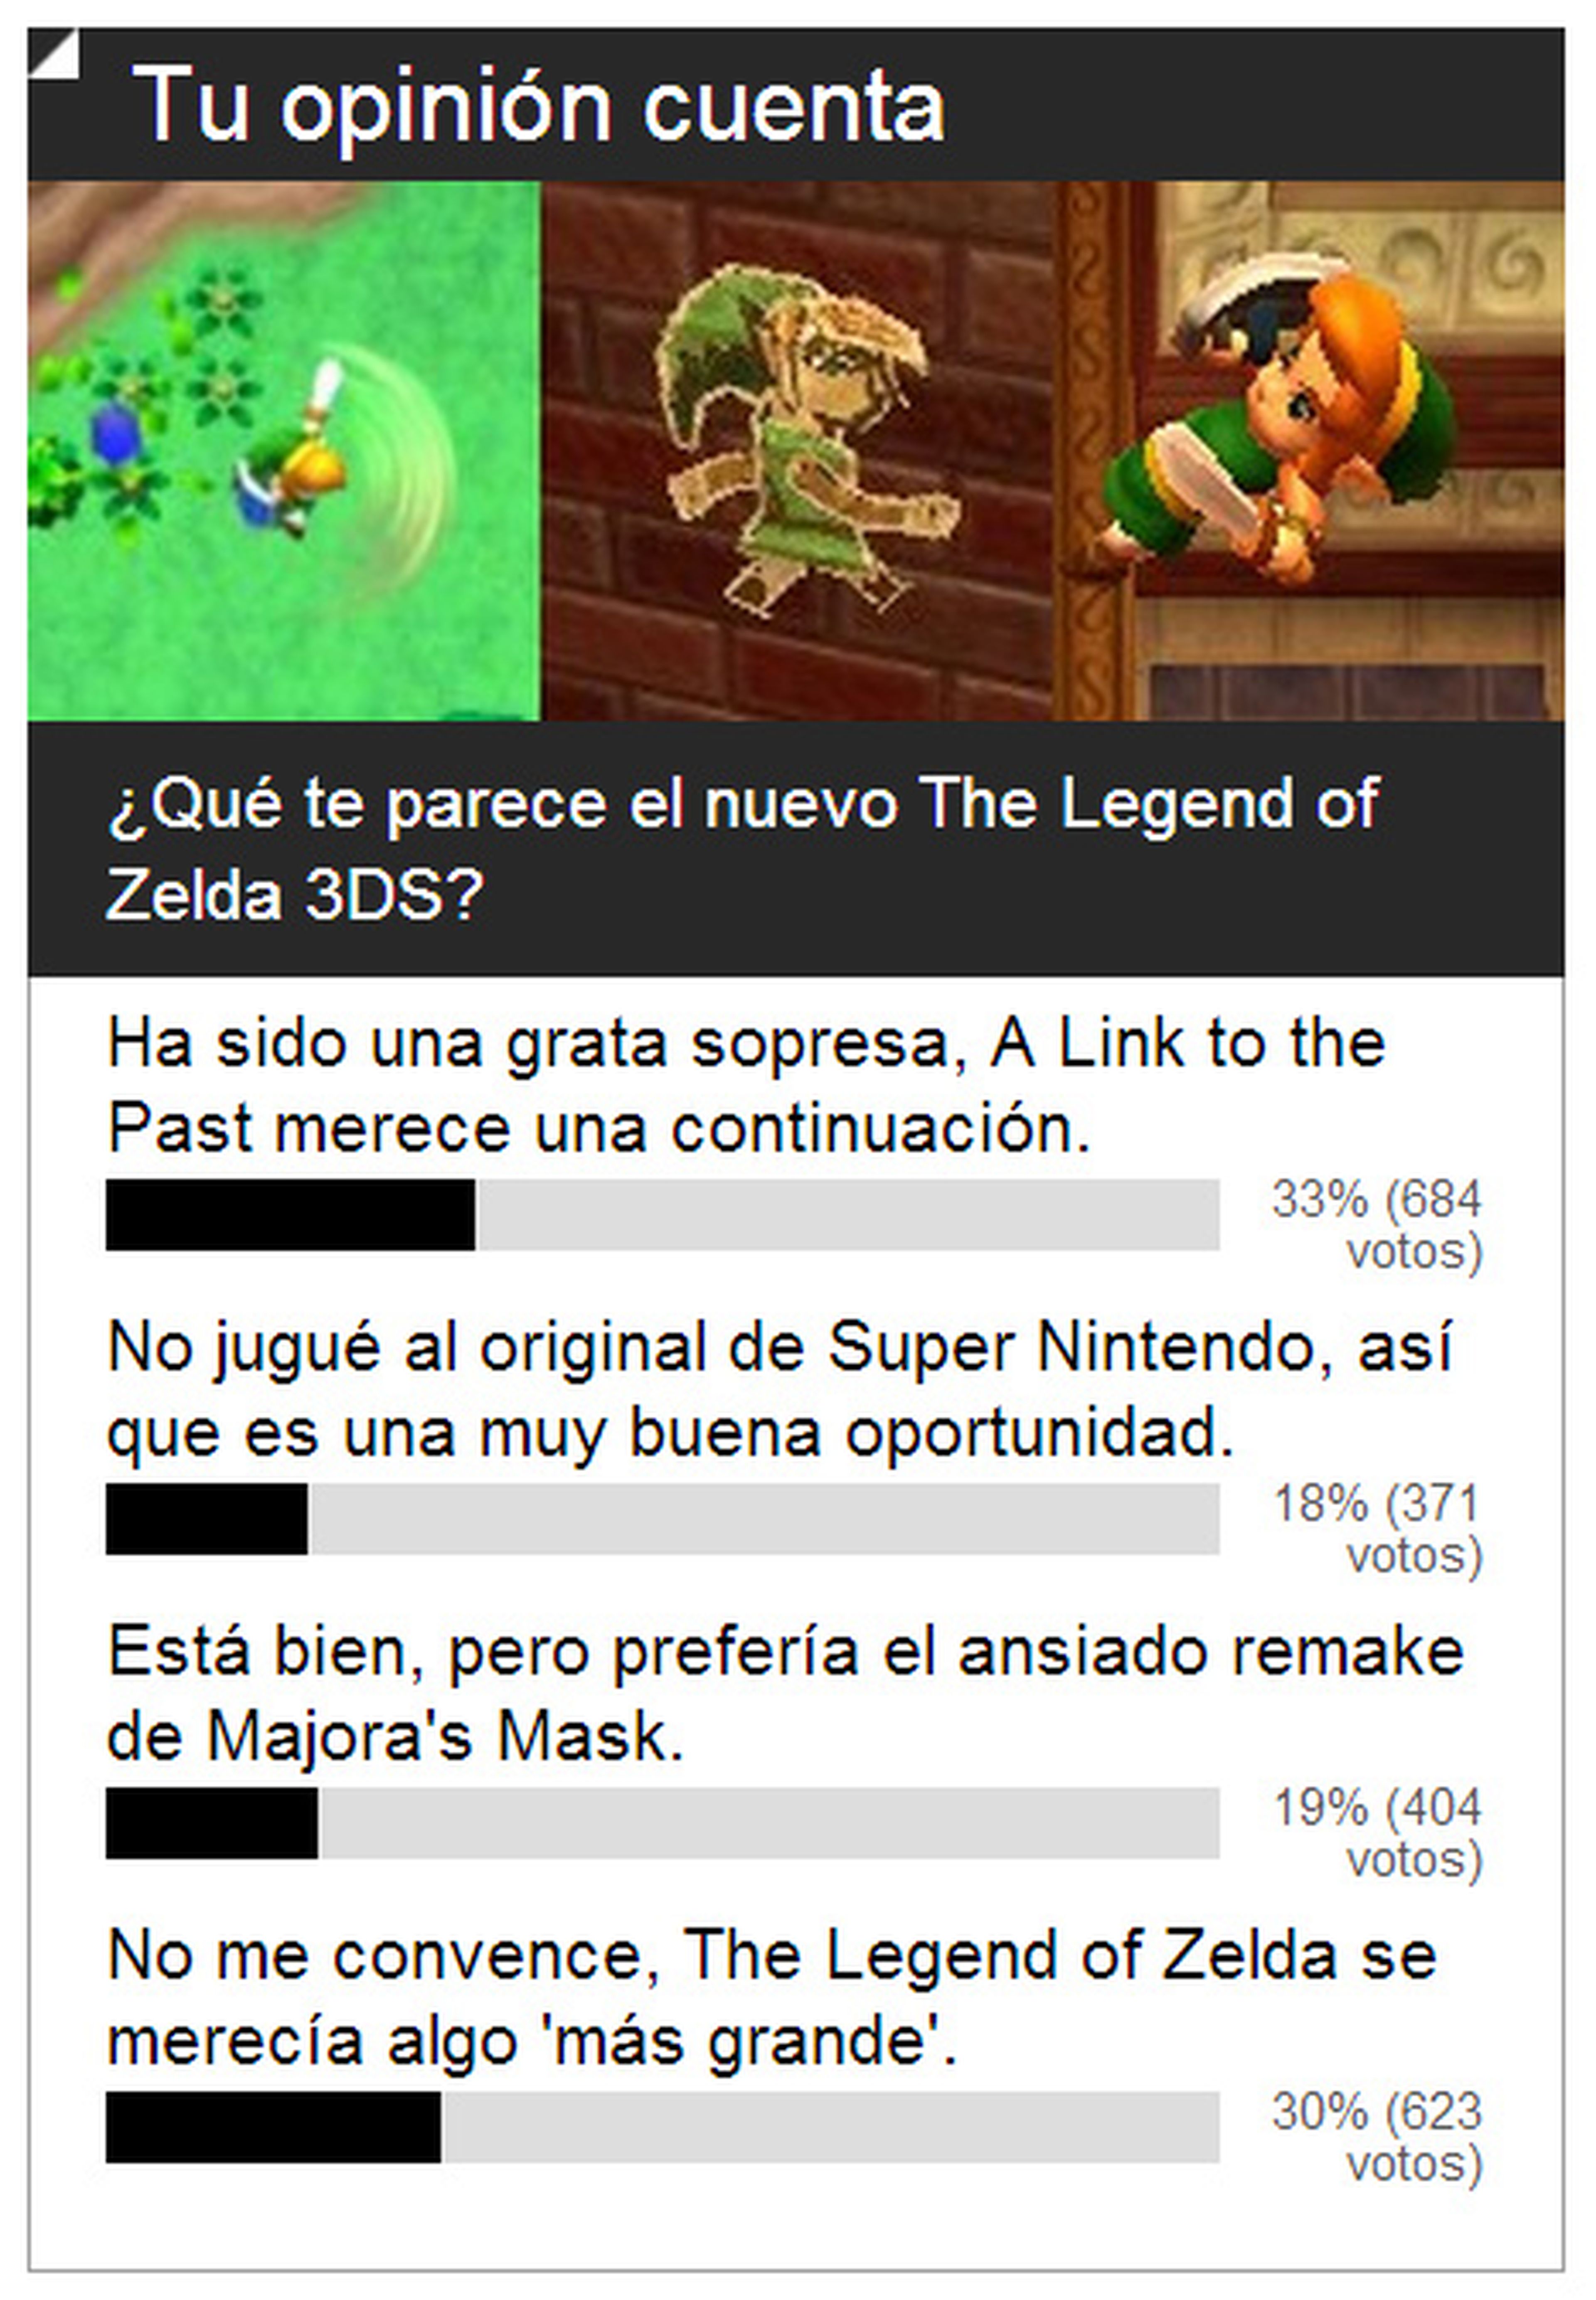 Encuesta: The Legend of Zelda 3DS aceptado por poco